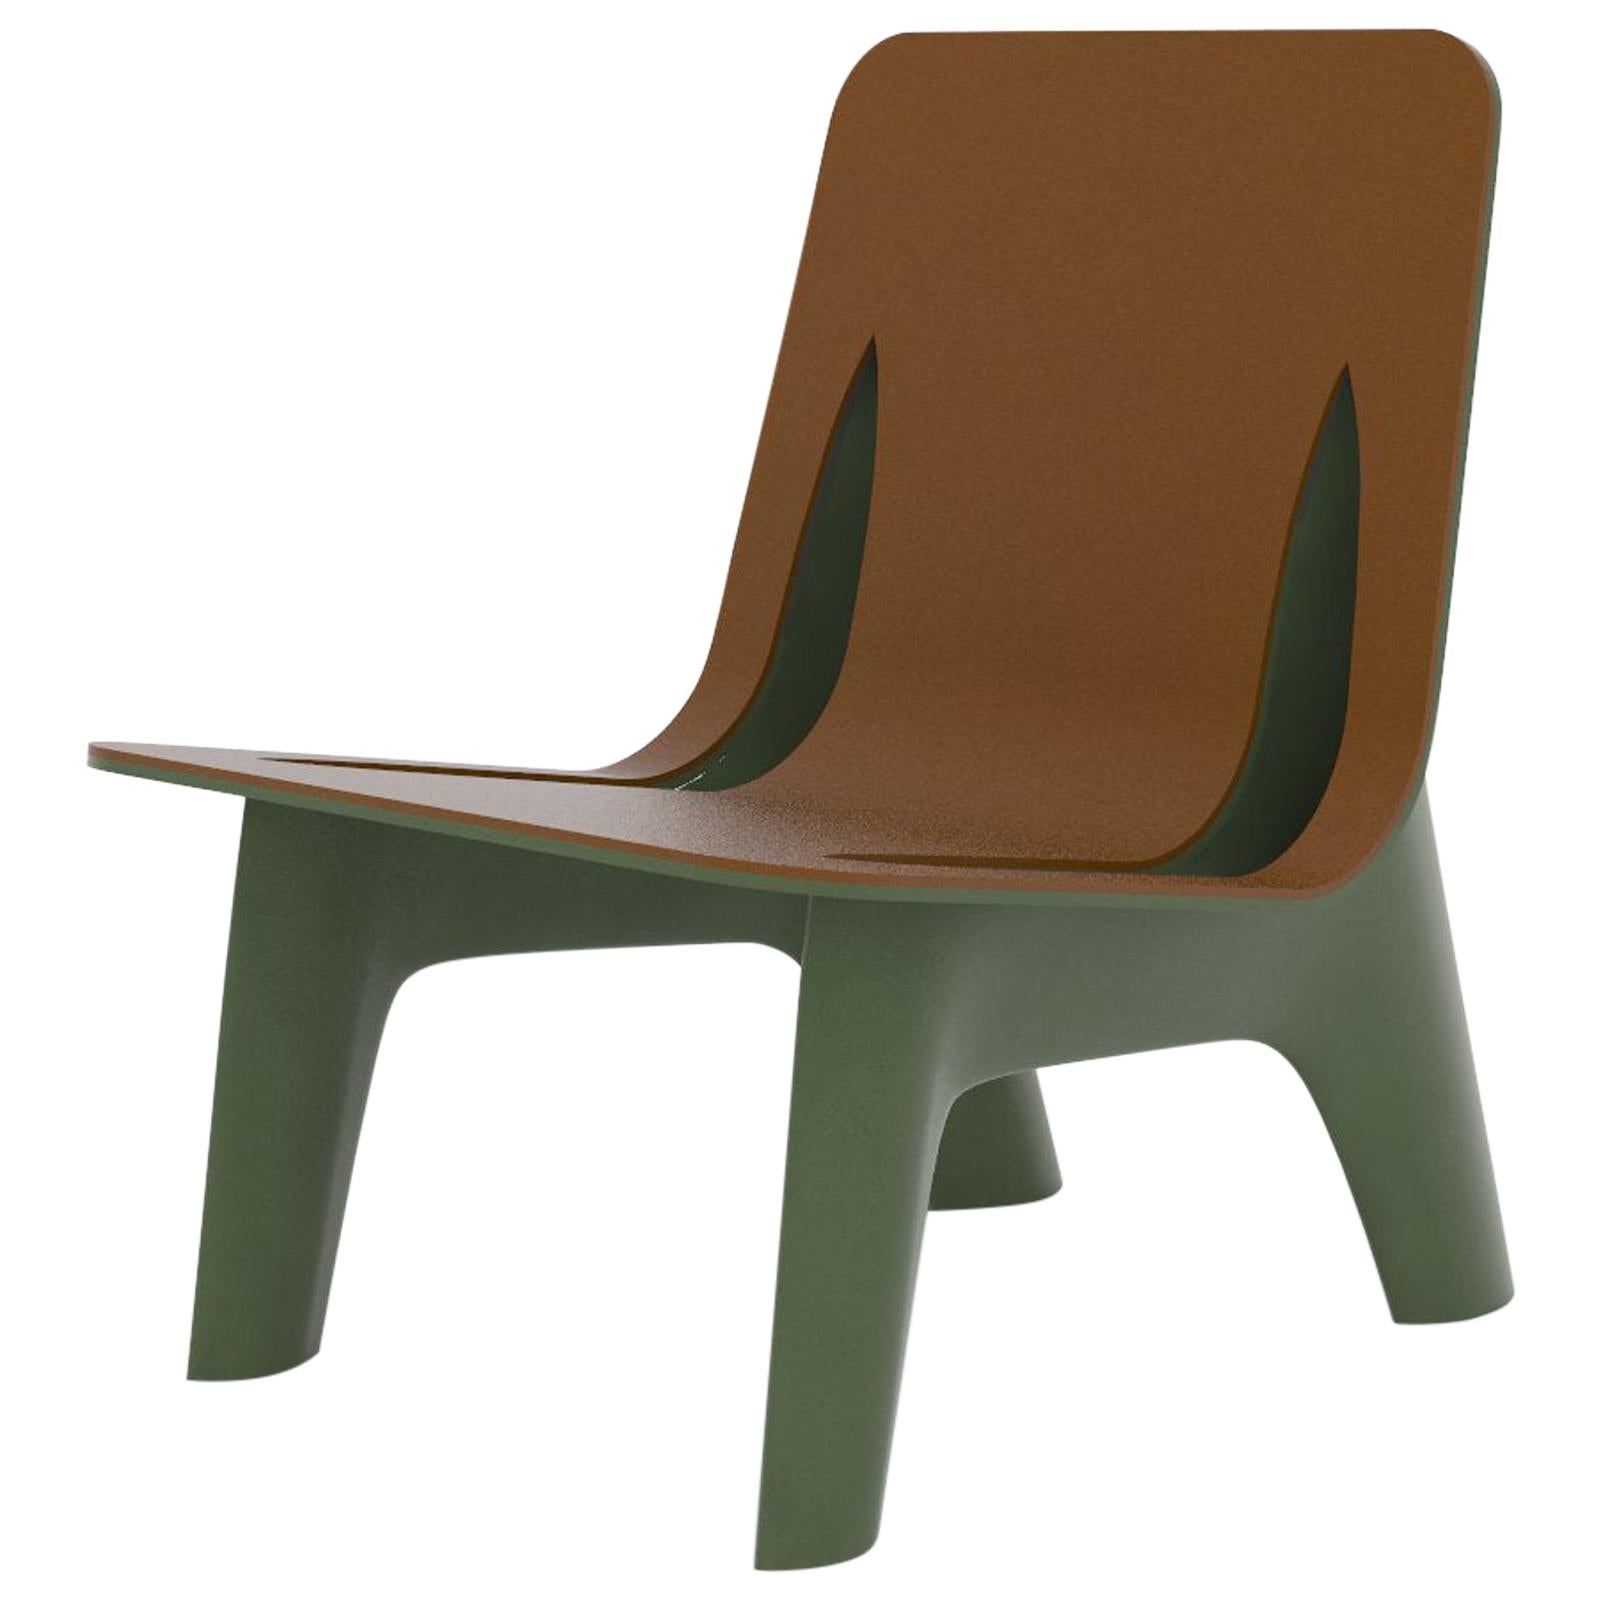 Chaise longue J-Chair en aluminium poli de couleur vert olive et assise en cuir par Zieta